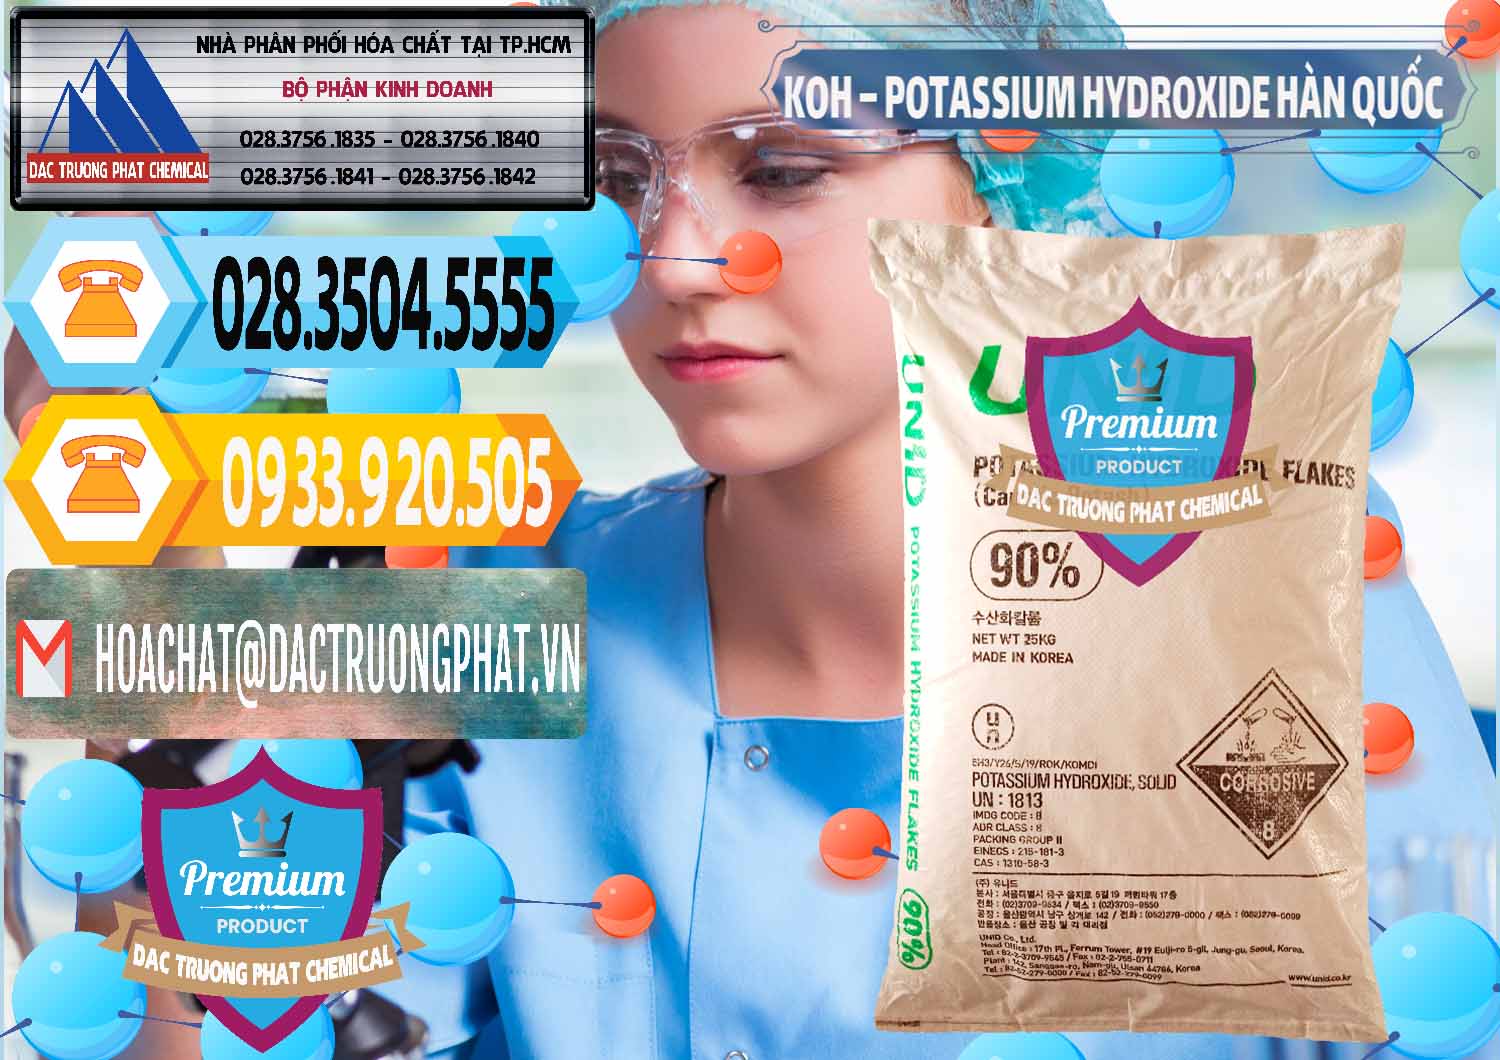 Nhà nhập khẩu - bán KOH ( 90%) – Potassium Hydroxide Unid Hàn Quốc Korea - 0090 - Cty chuyên phân phối - kinh doanh hóa chất tại TP.HCM - hoachattayrua.net